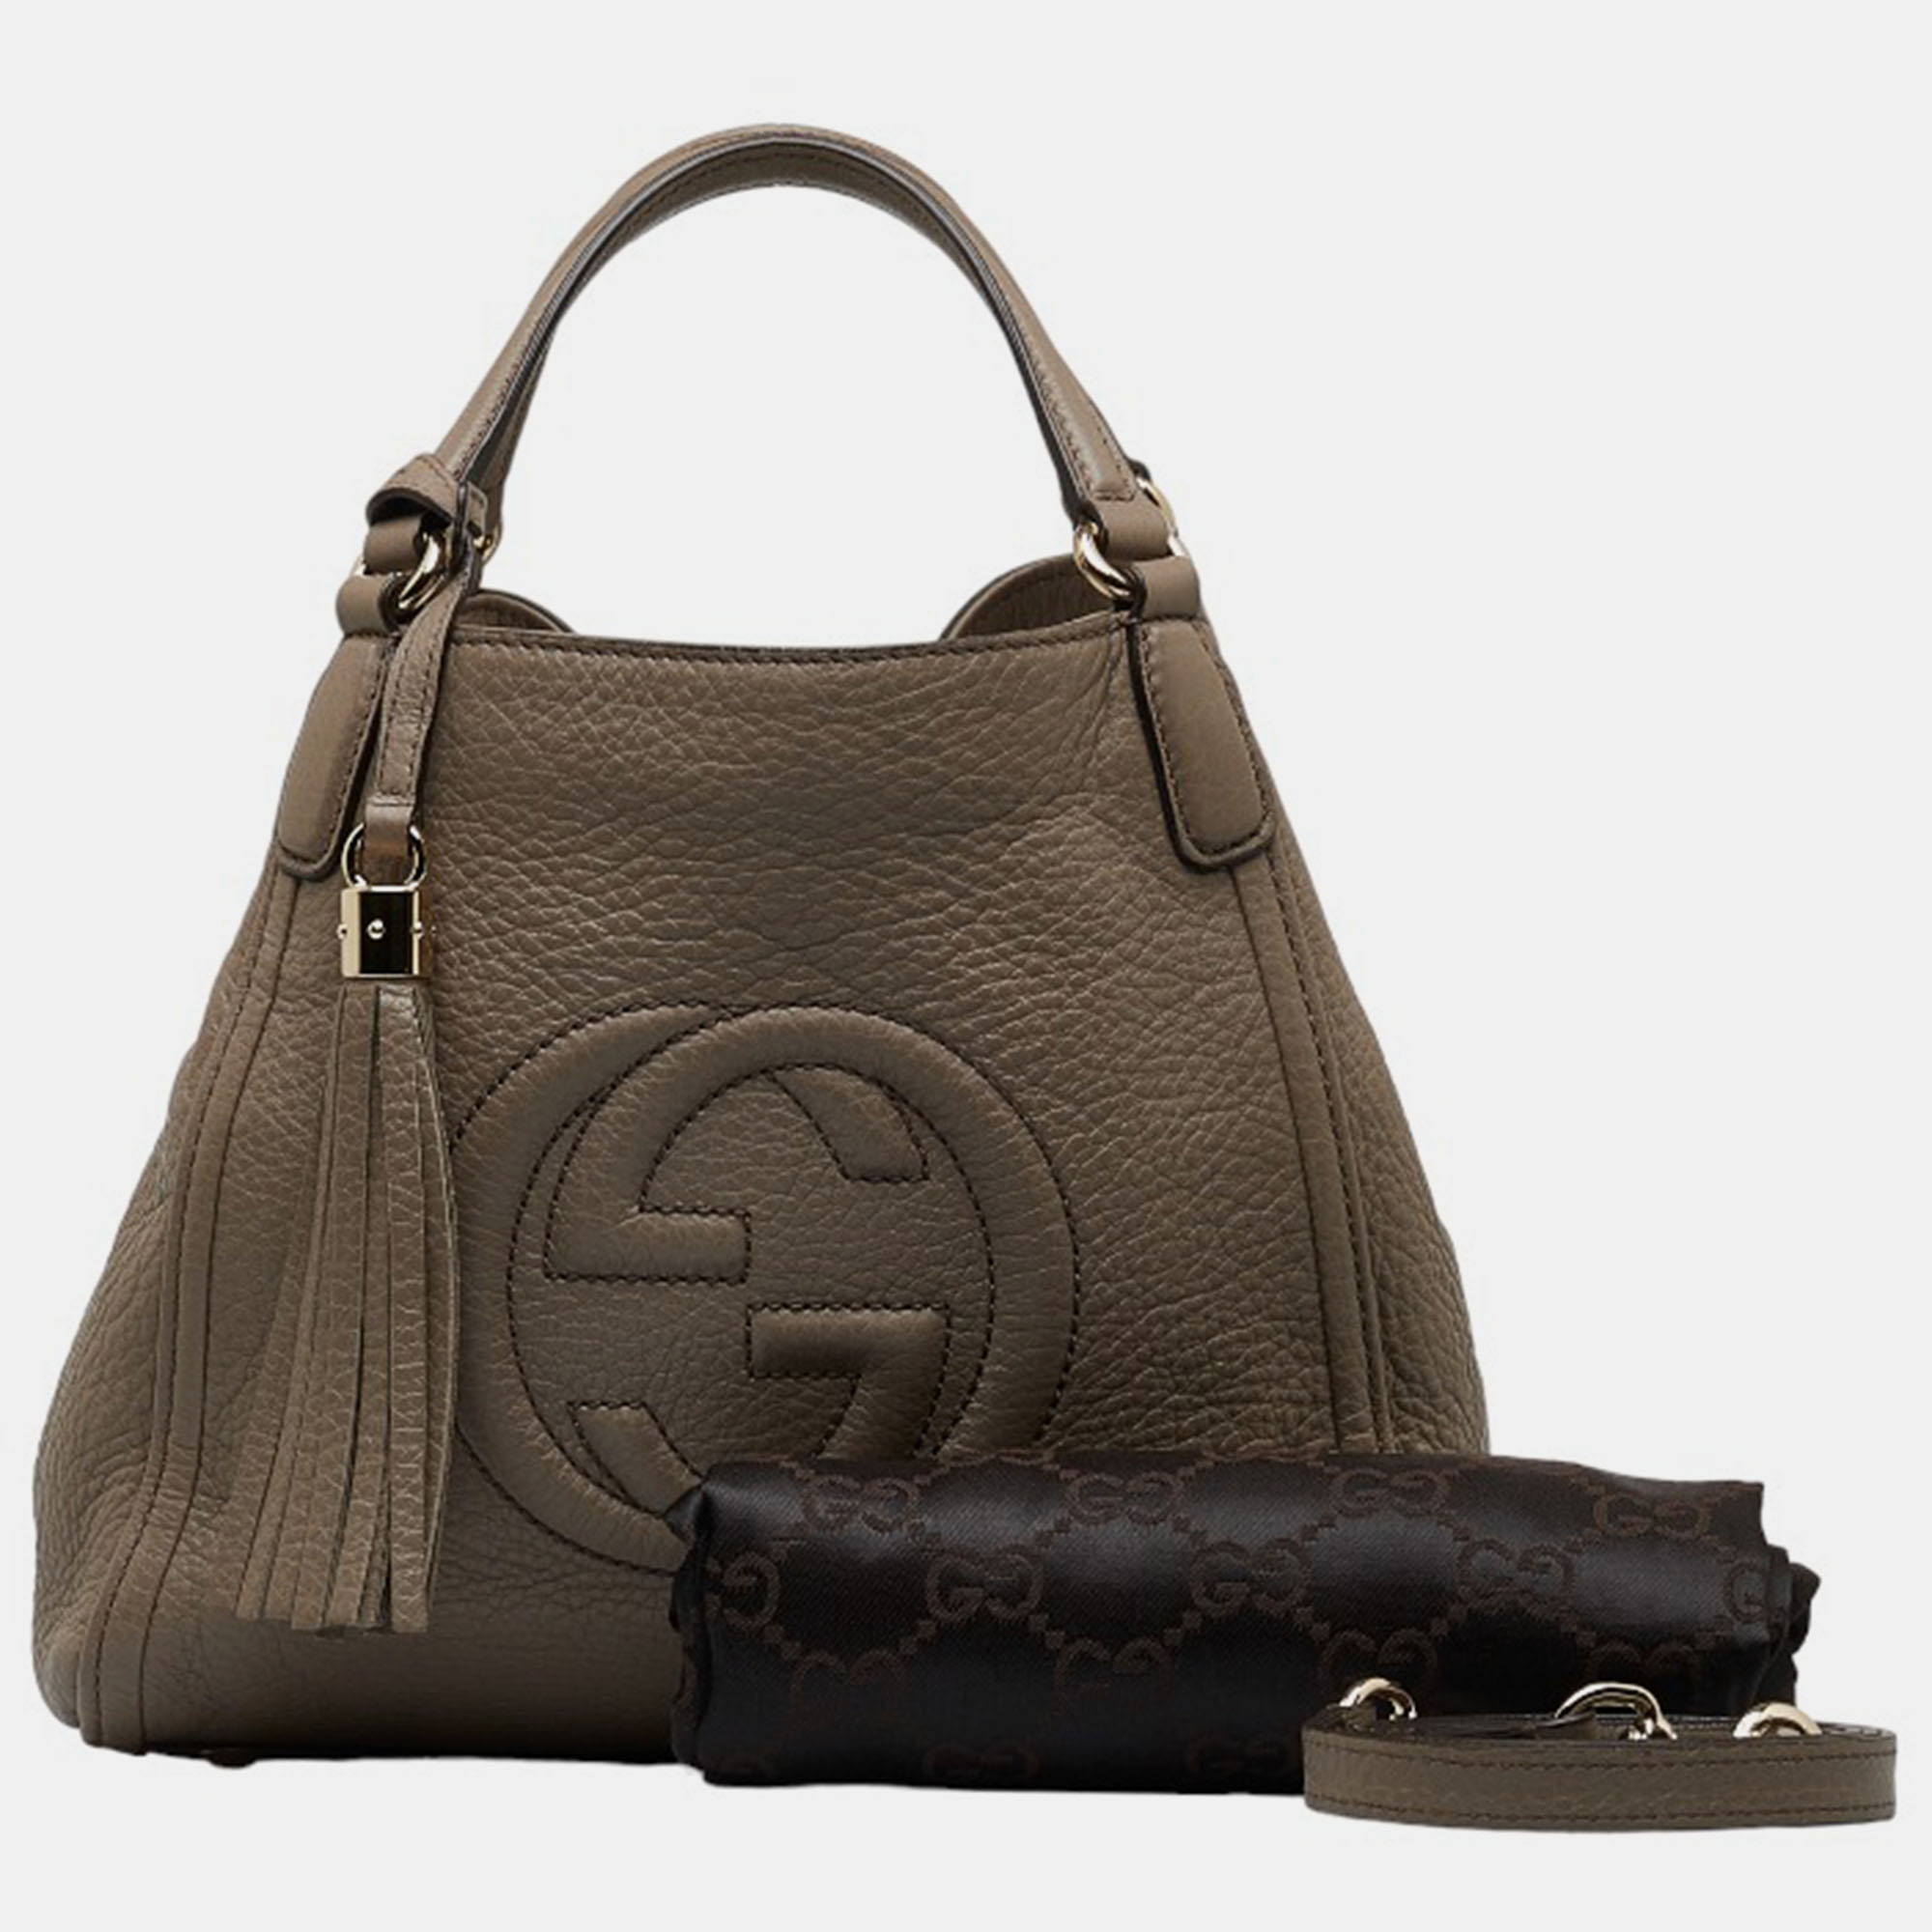 Gucci Brown Leather Soho Handbag